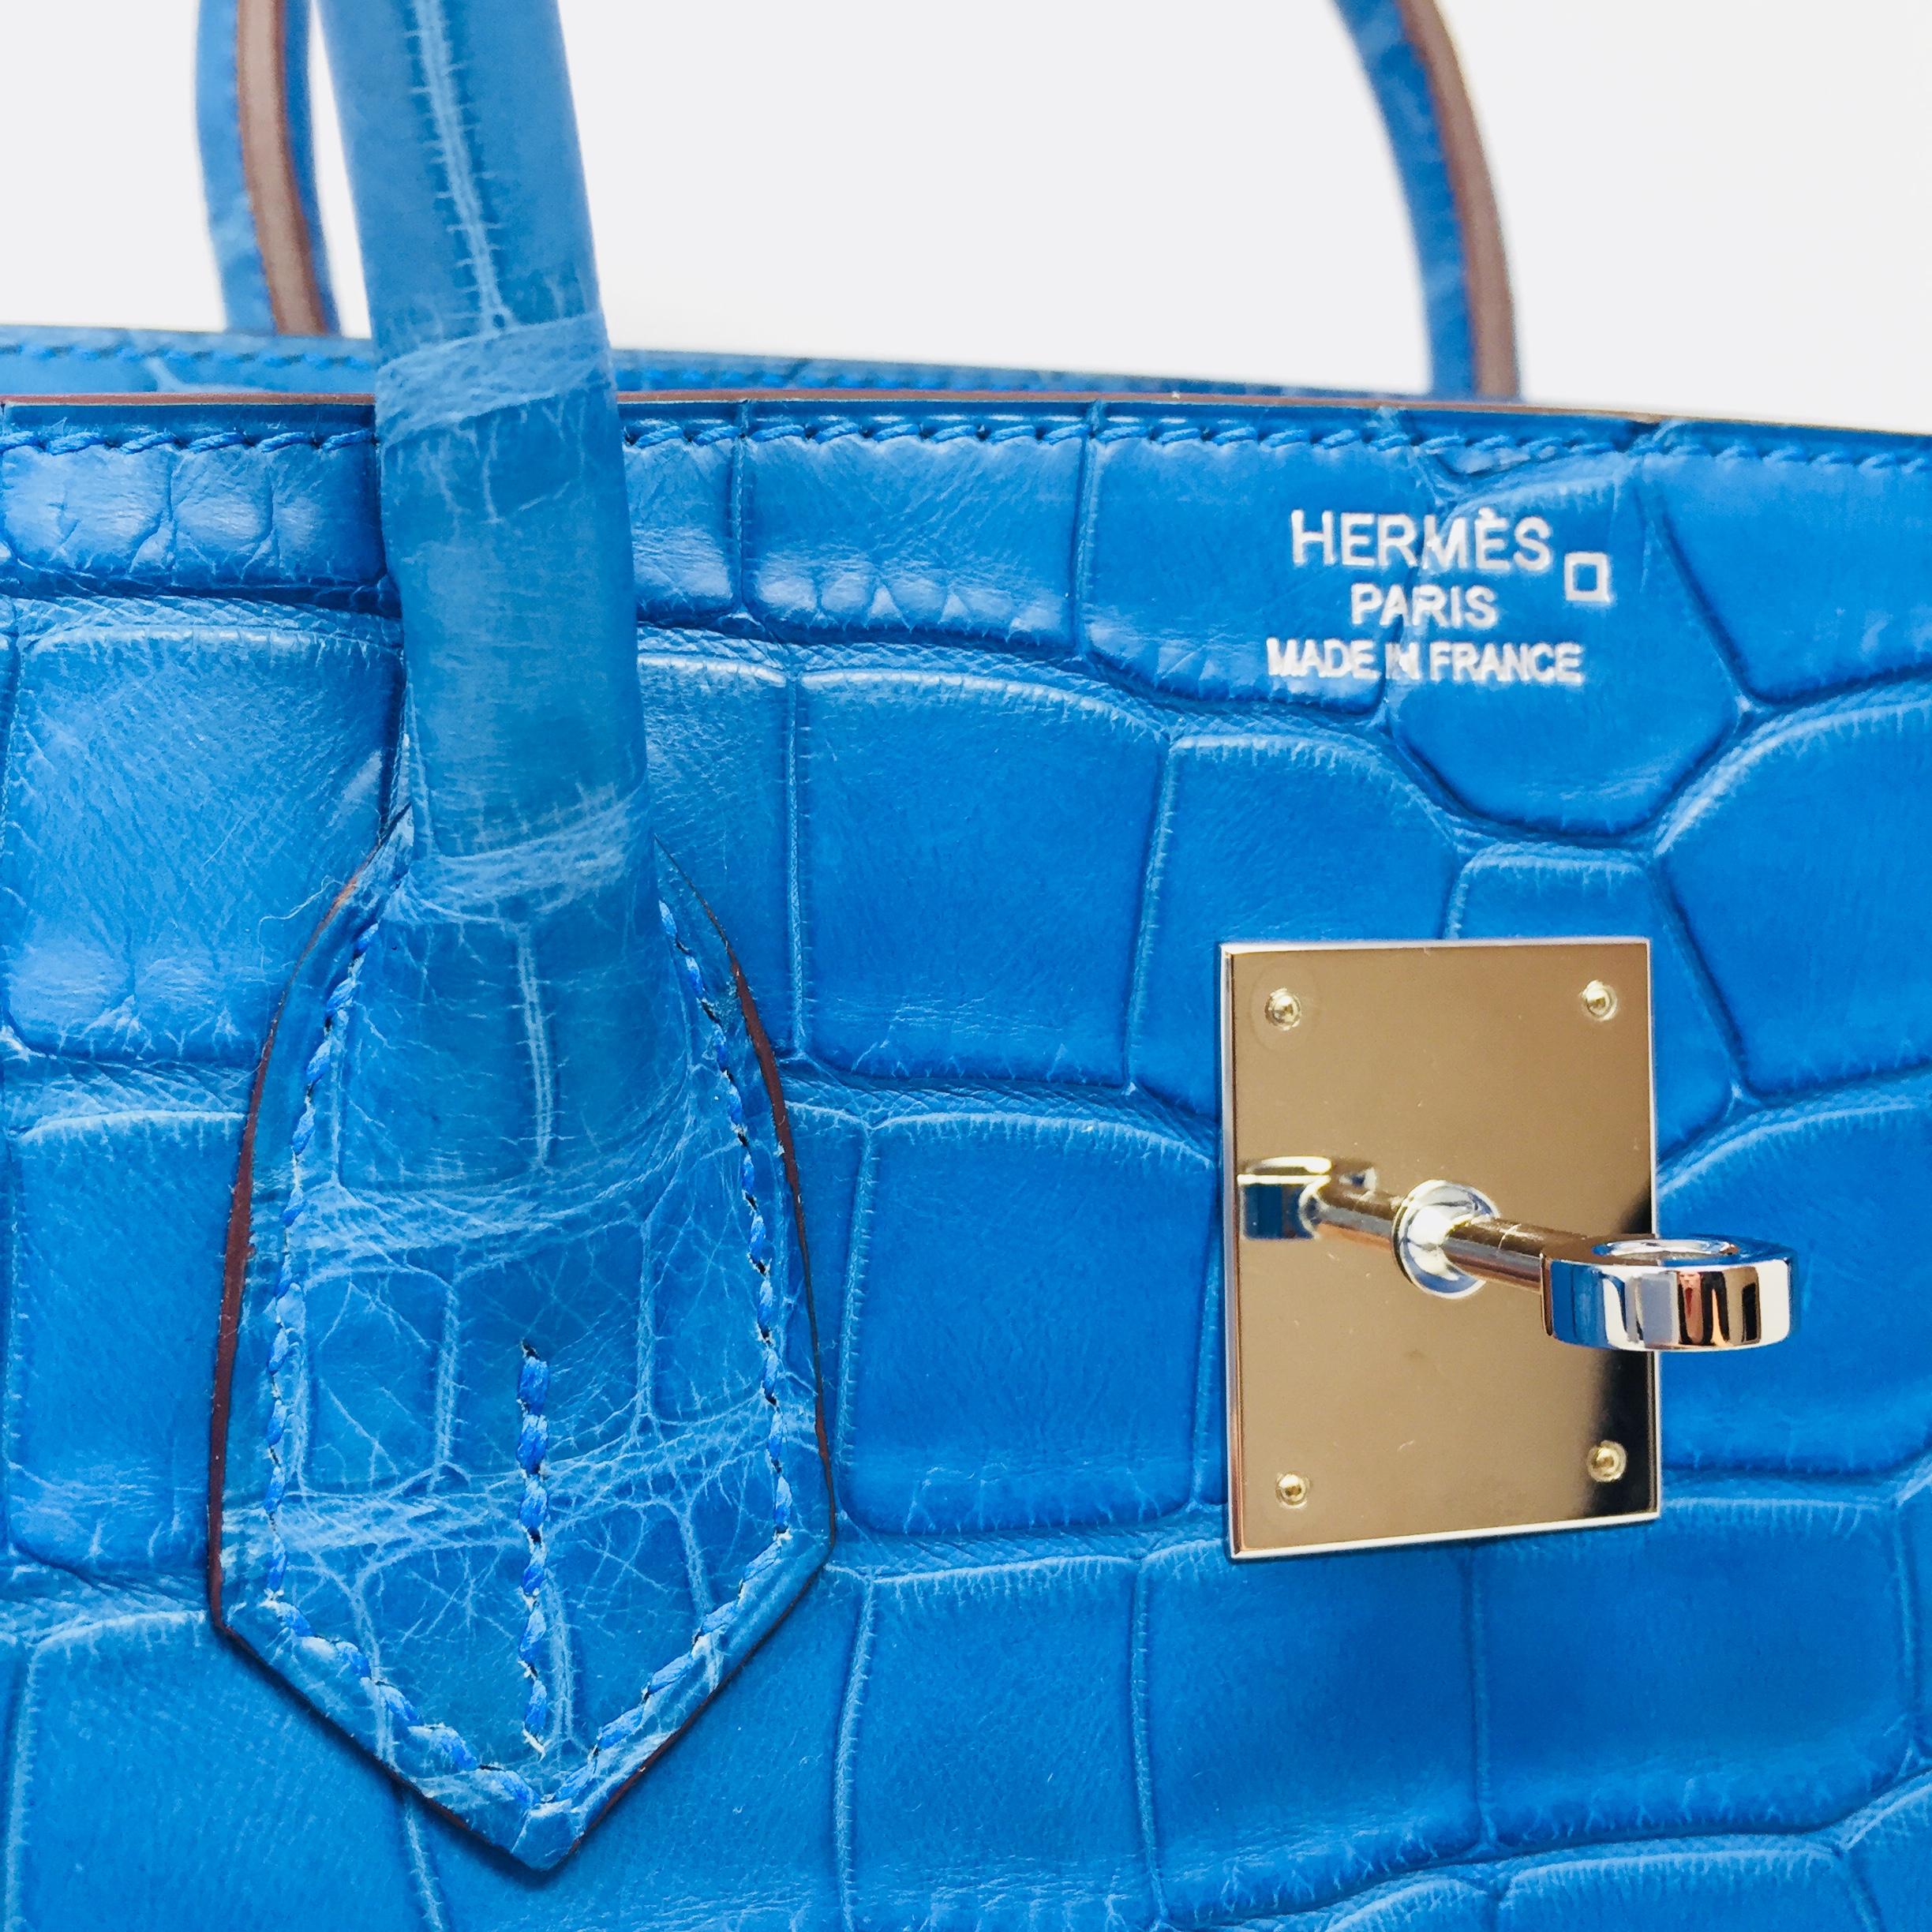 Hermes Paris Birkin 35 Alligator Mississippiensis Blue Mykonos Mat Bag, 2012 13